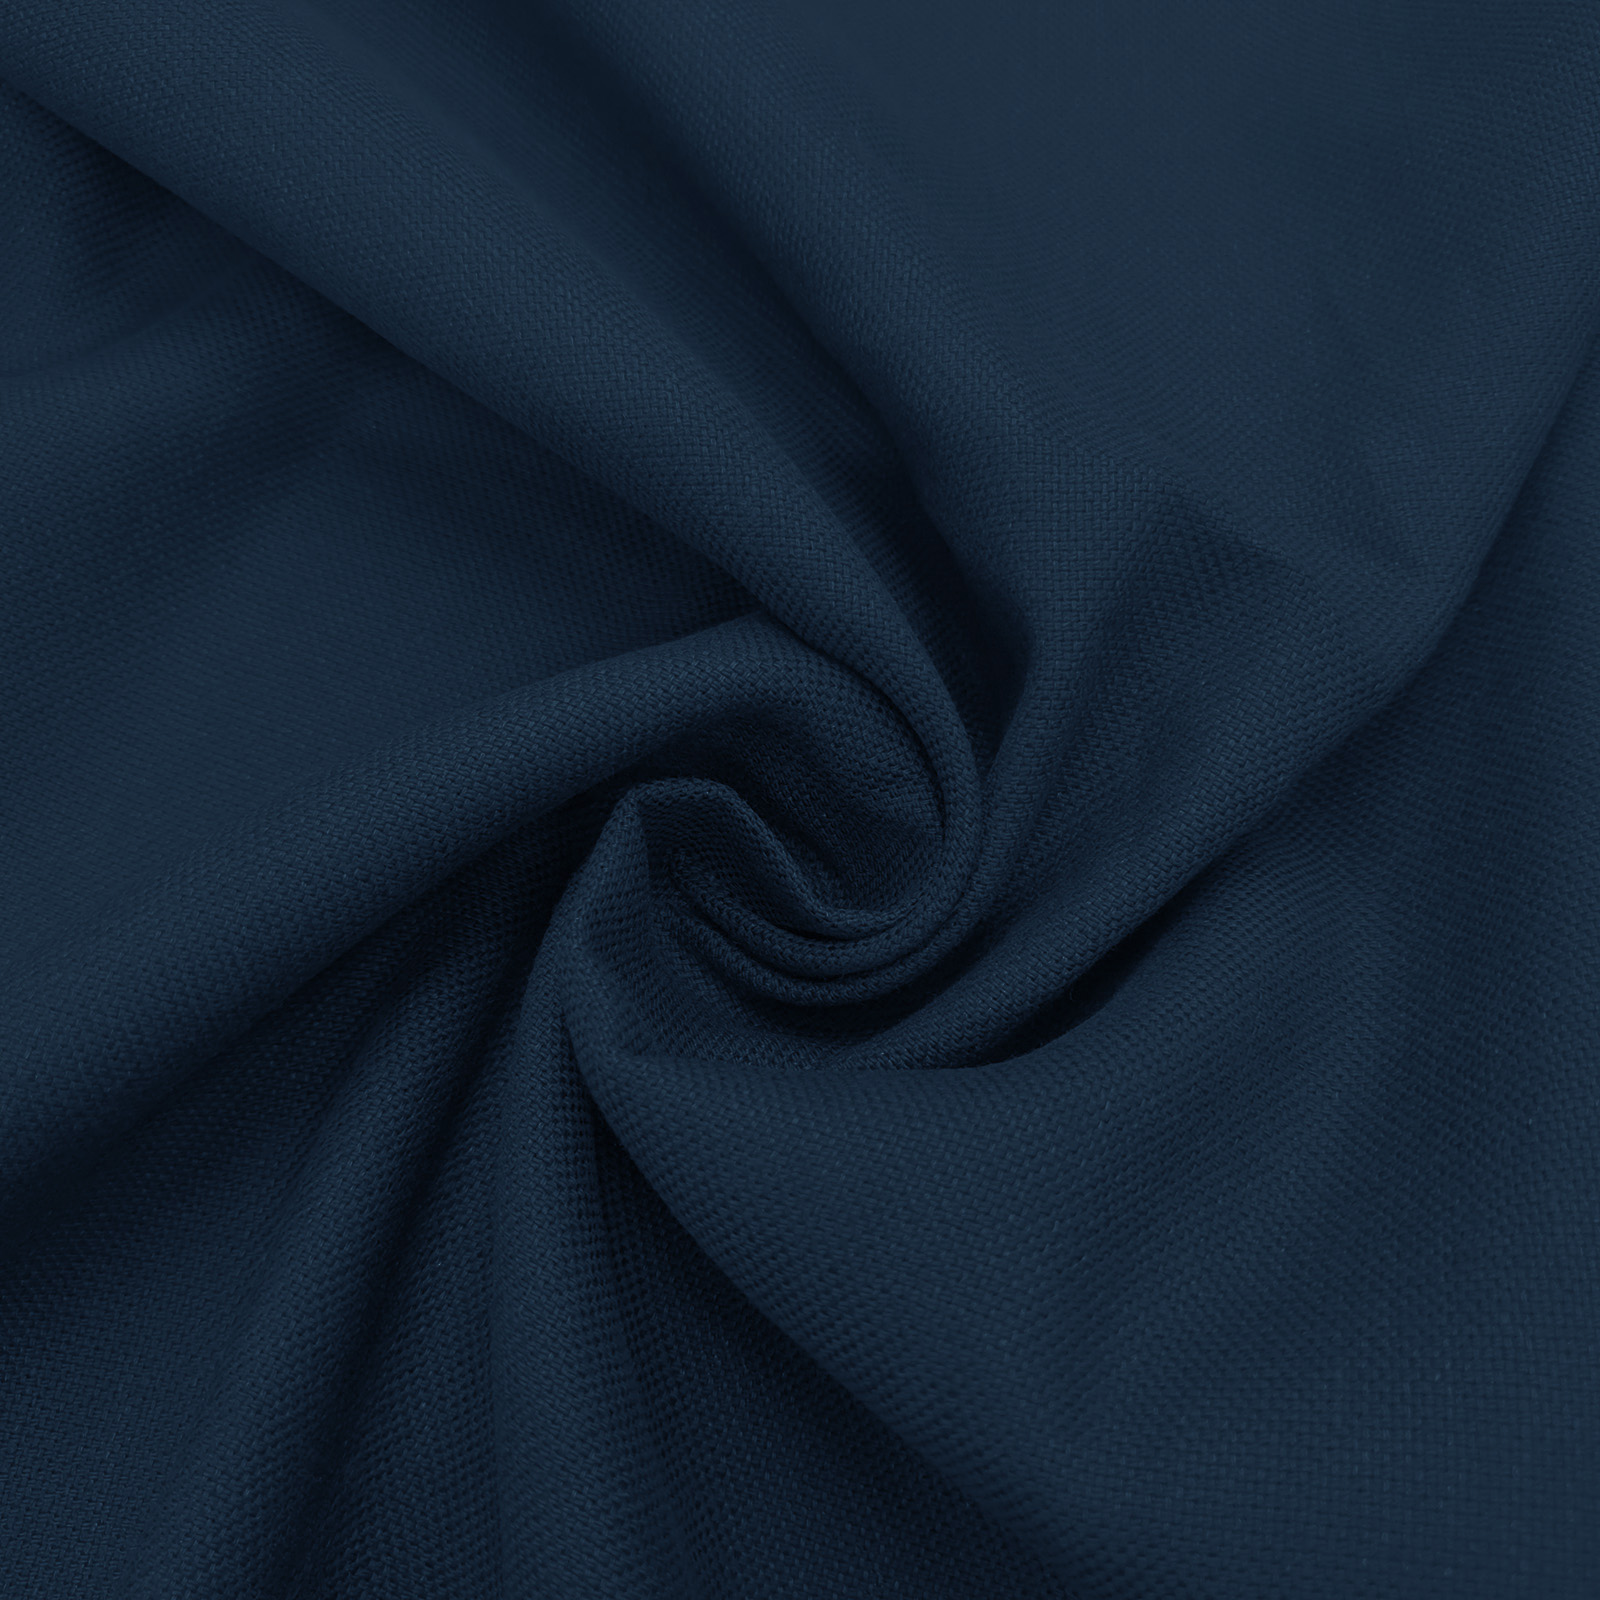 Rustico linen fabric - "navy"